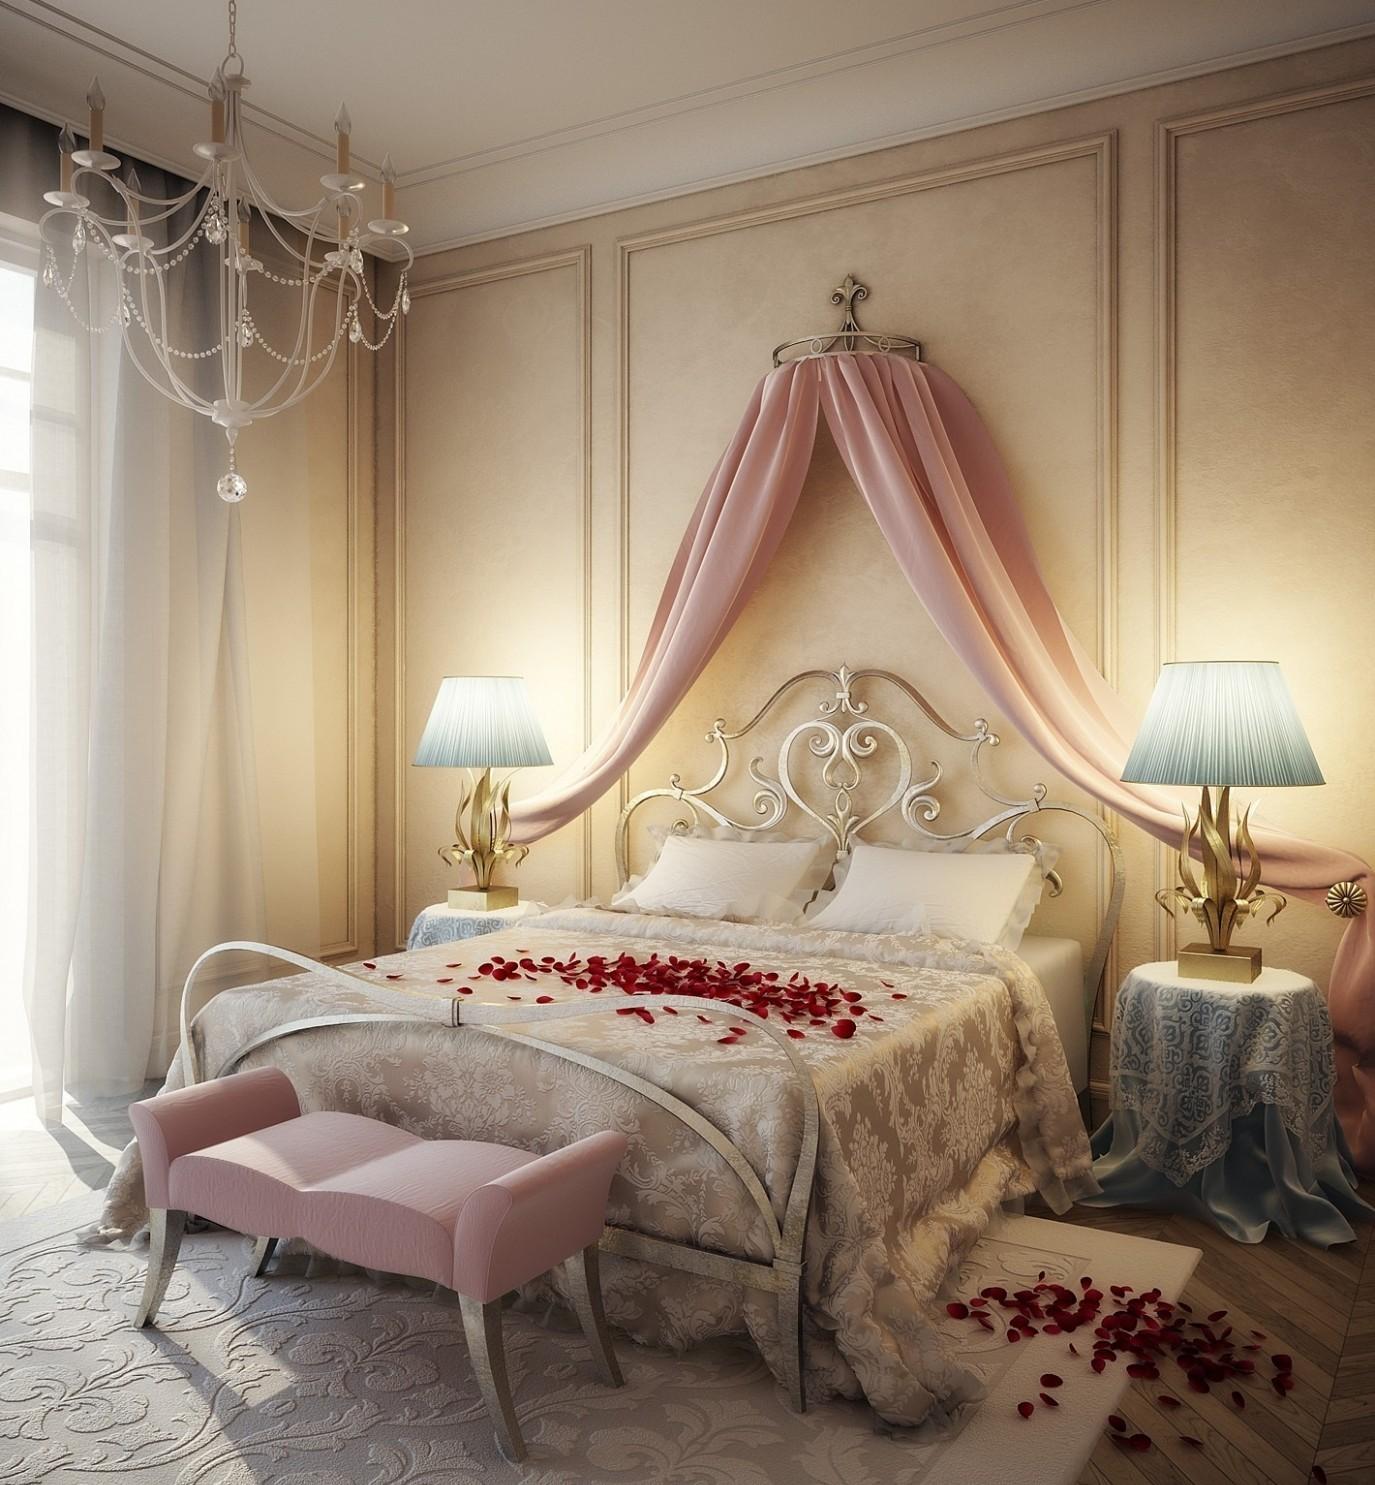 Розовый балдахин в спальне молодоженов